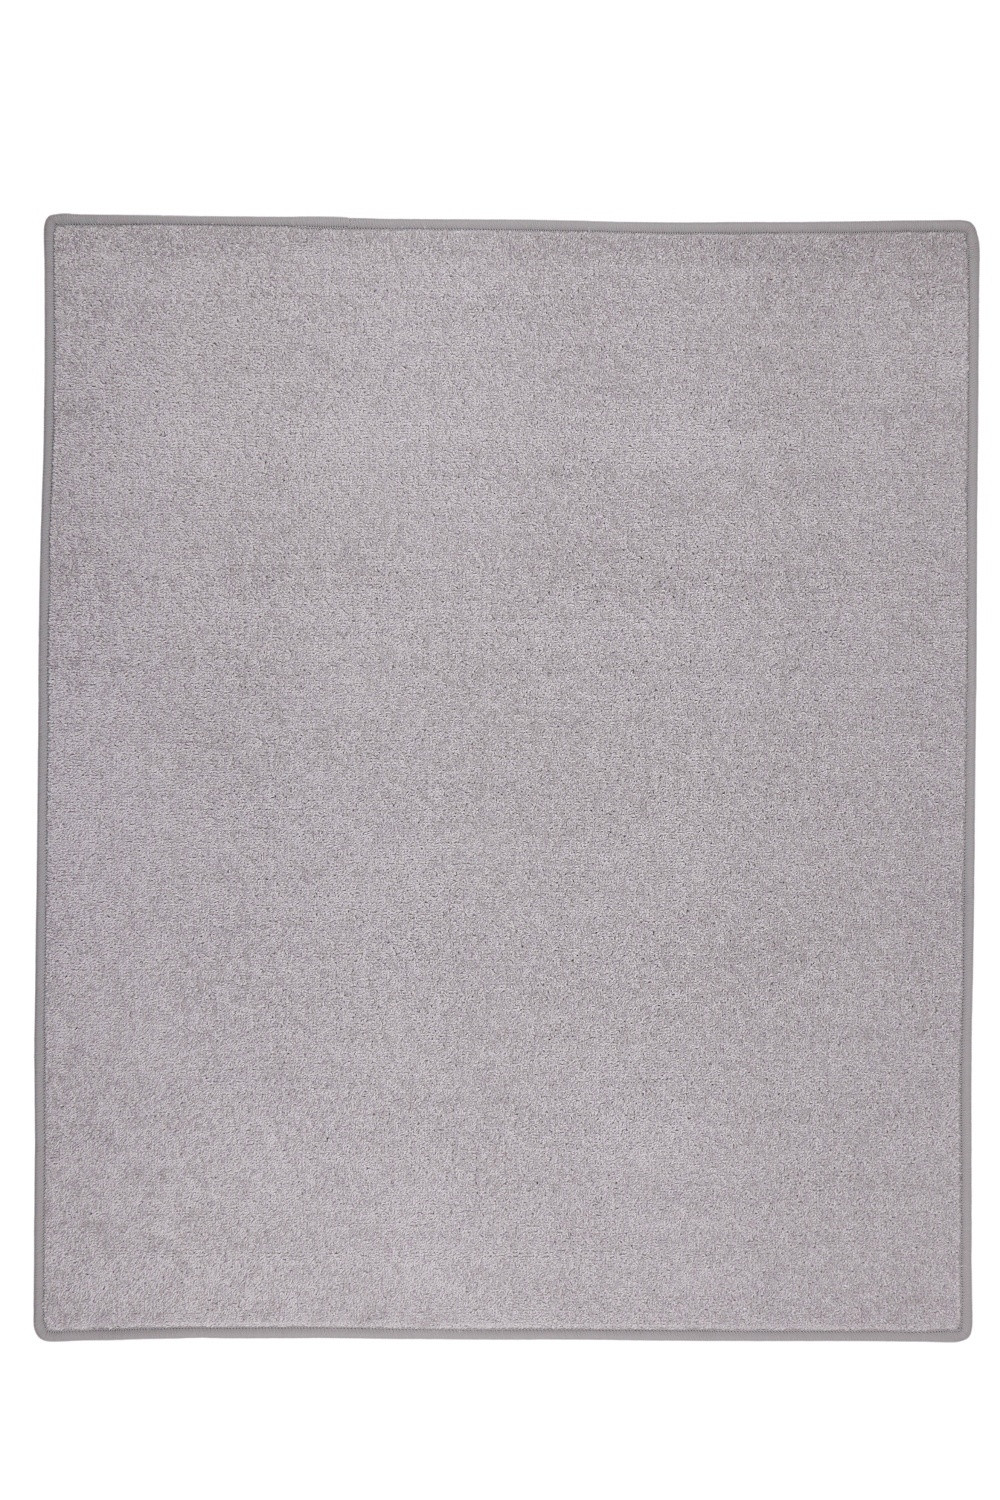 Kusový koberec Eton sivý 73 - 80x150 cm Vopi koberce 